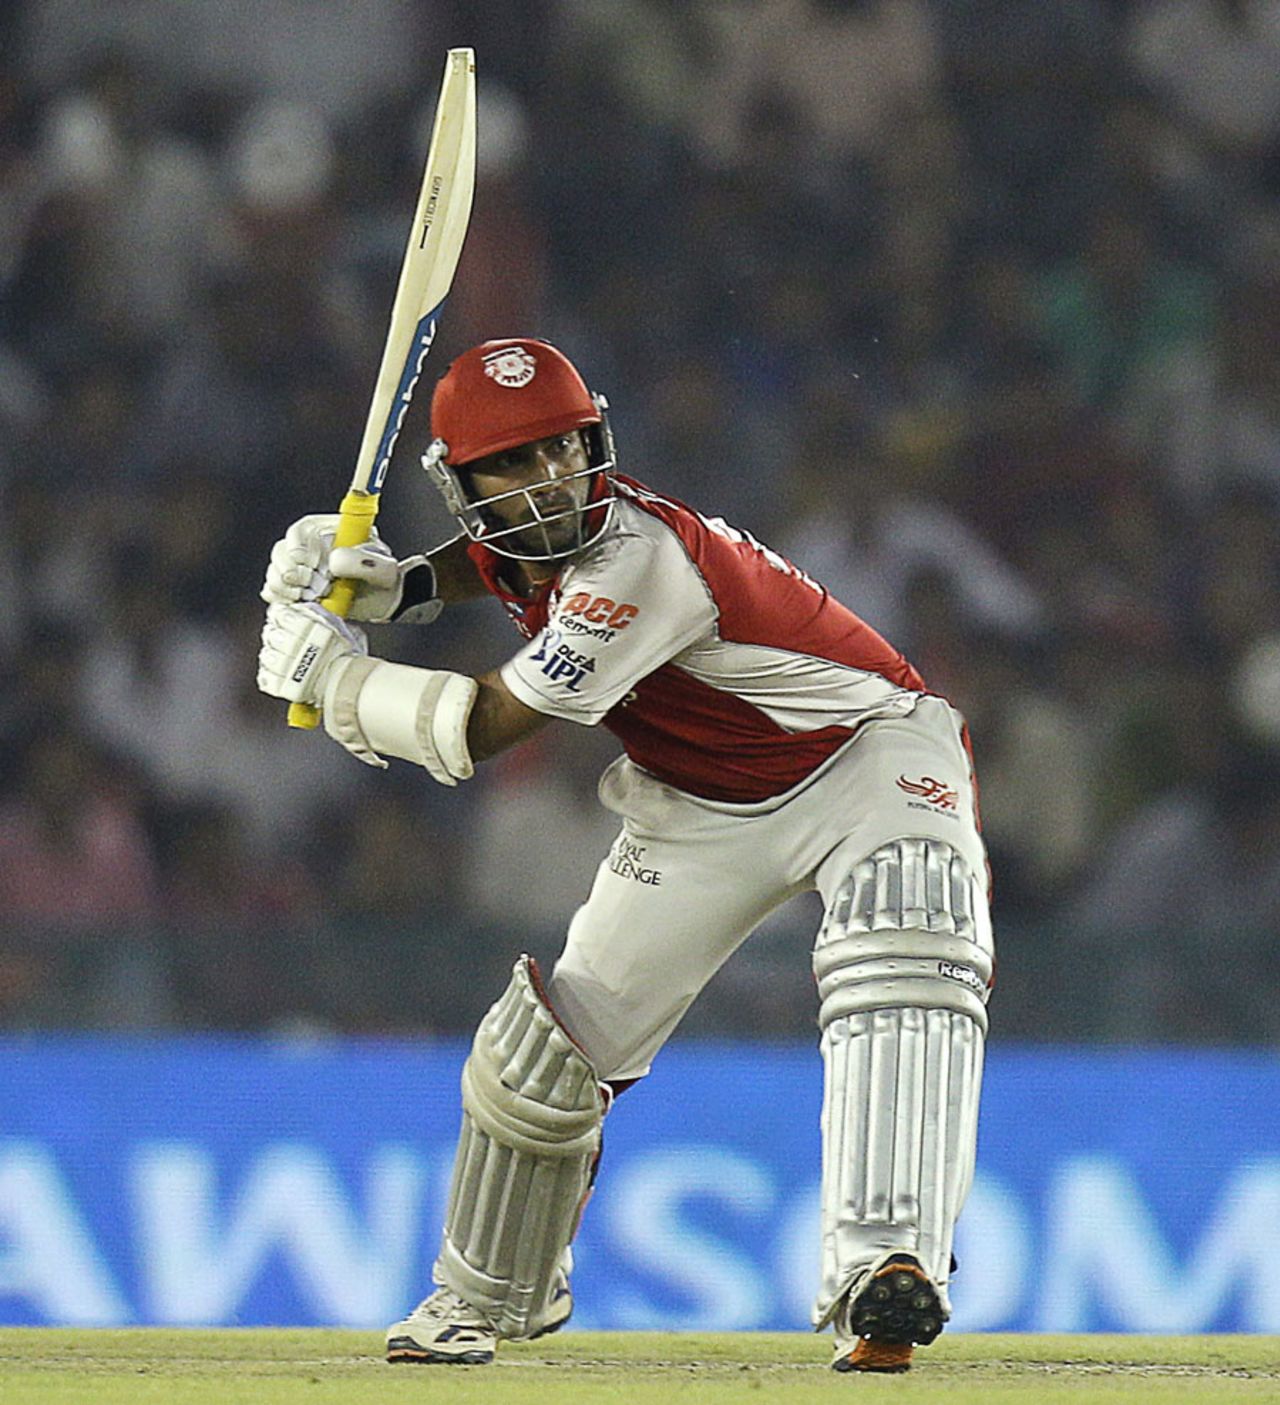 Dinesh Karthik is poised to smash the ball, Kings XI Punjab v Mumbai Indians, IPL 2011, Mohali, May 10, 2011